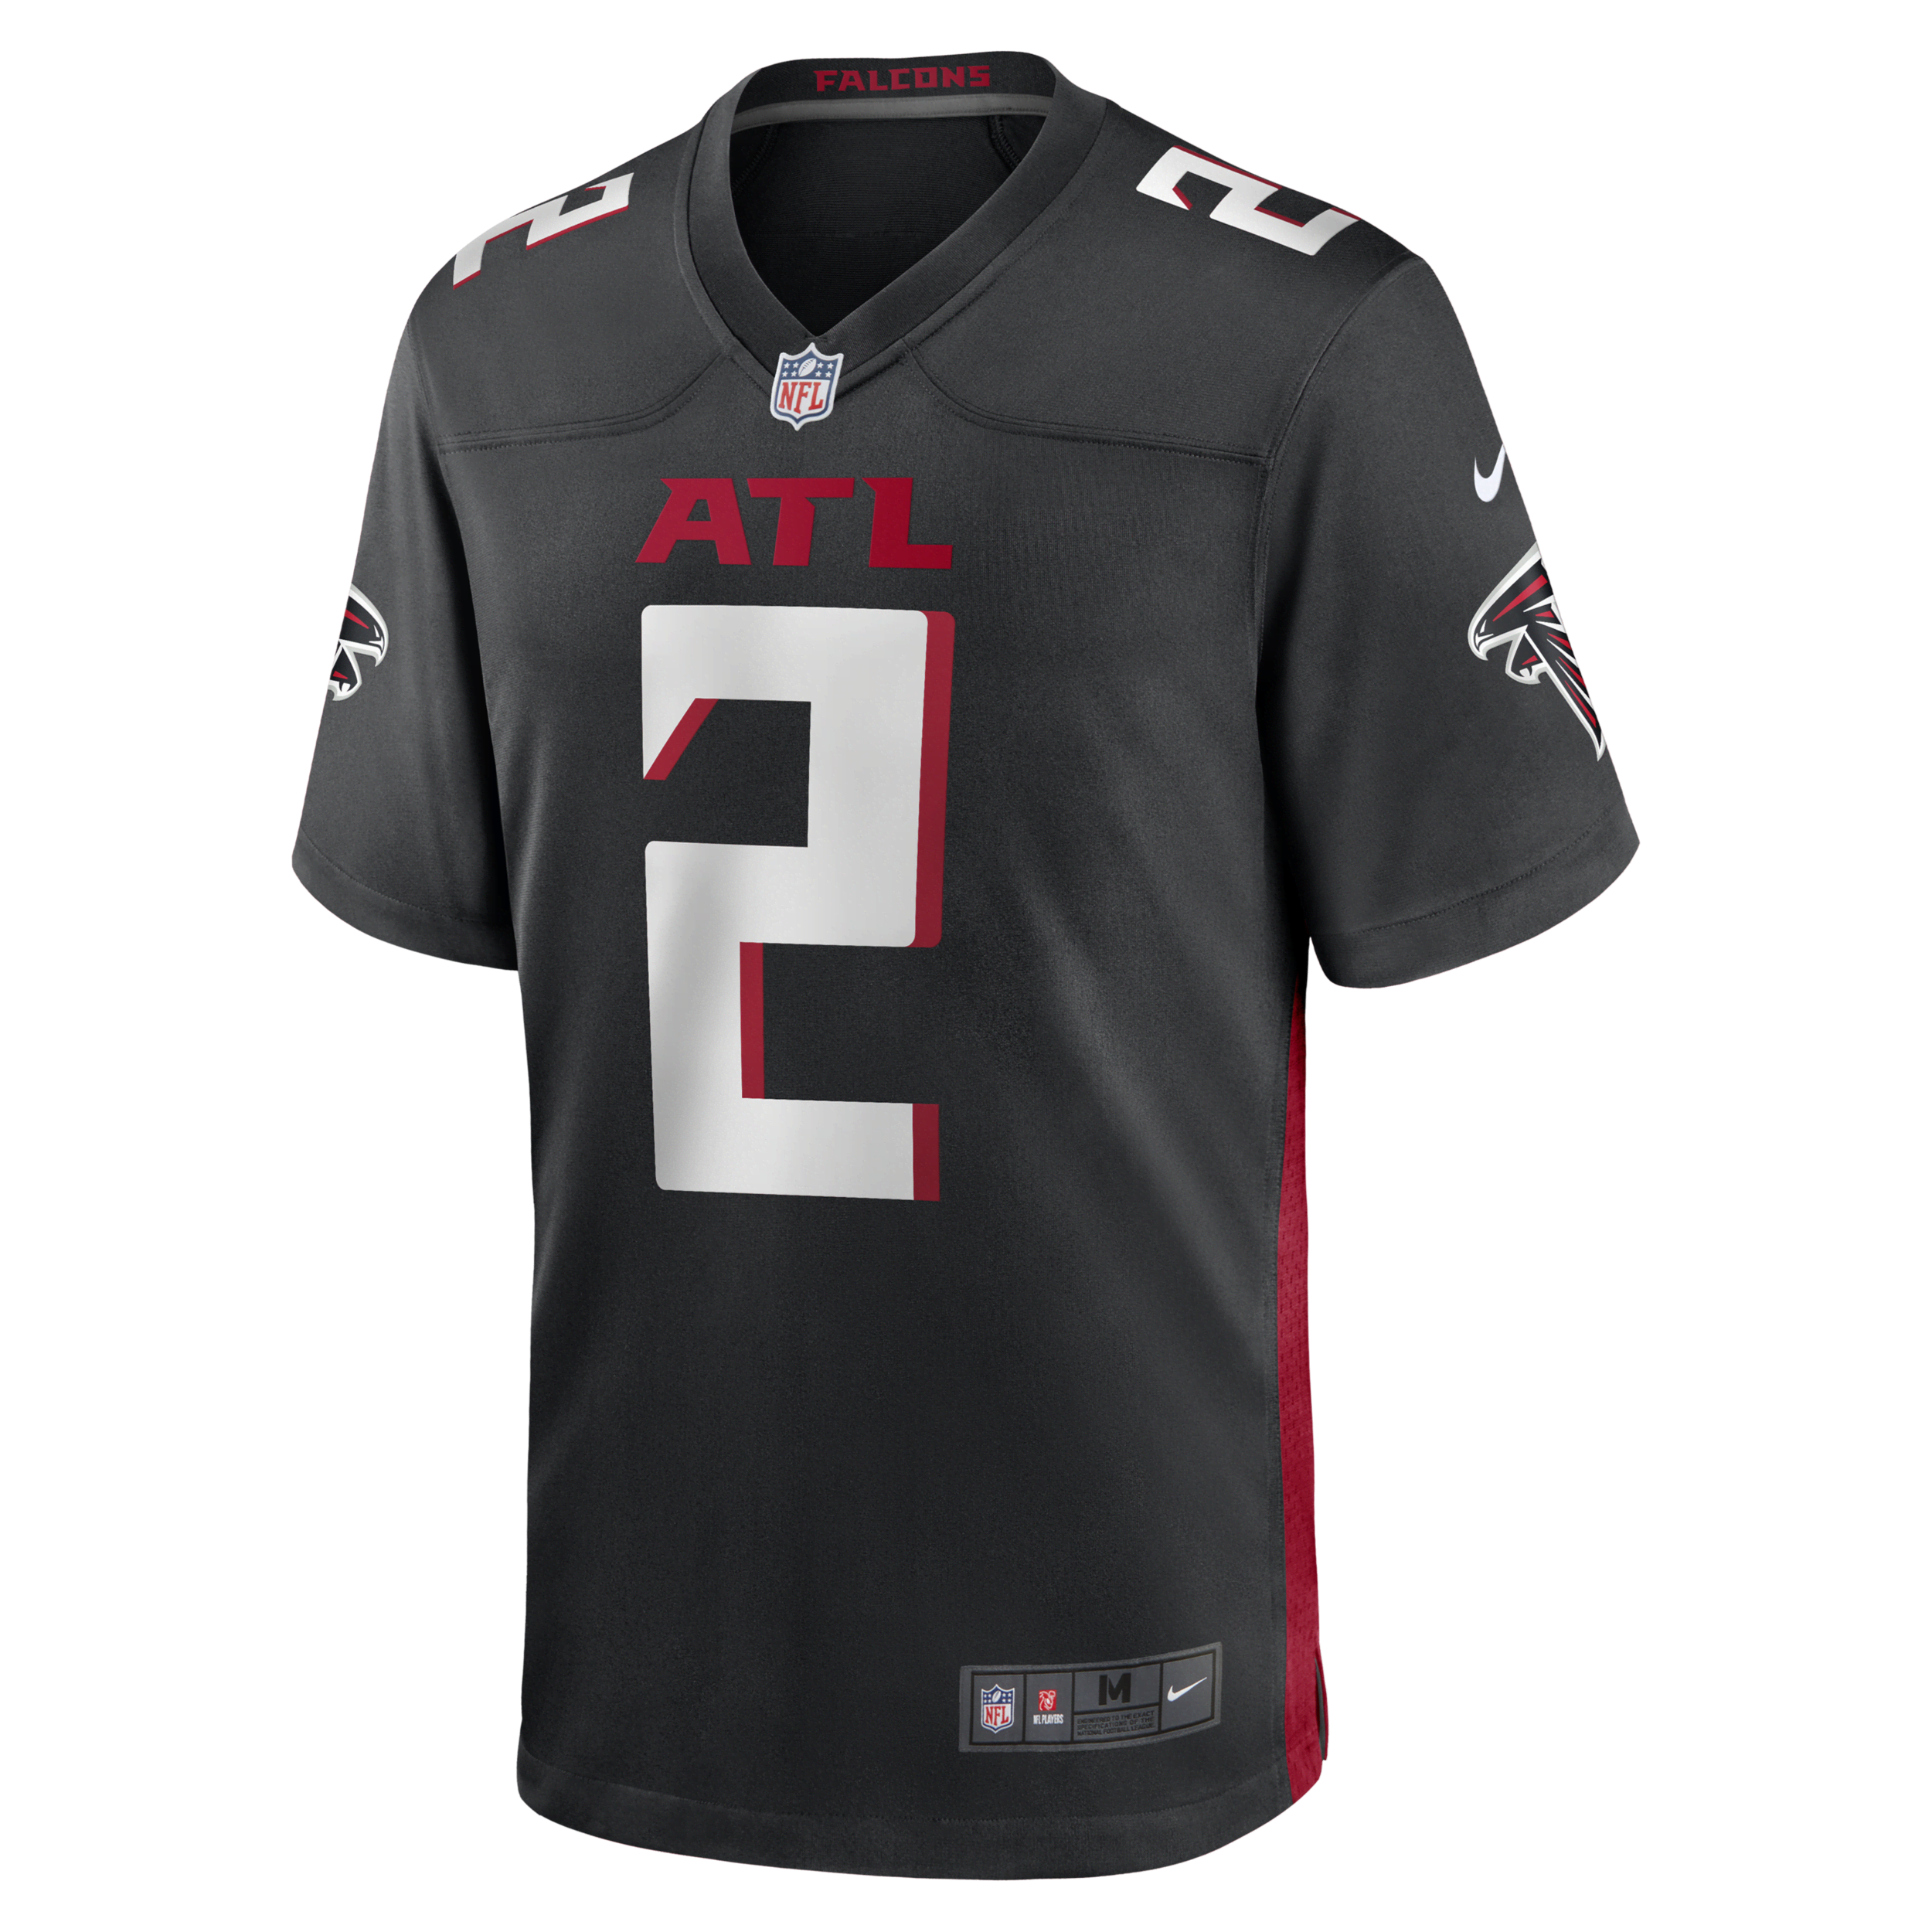 Nike NFL Atlanta Falcons (Matt Ryan) American-football-wedstrijdjersey voor heren - Zwart